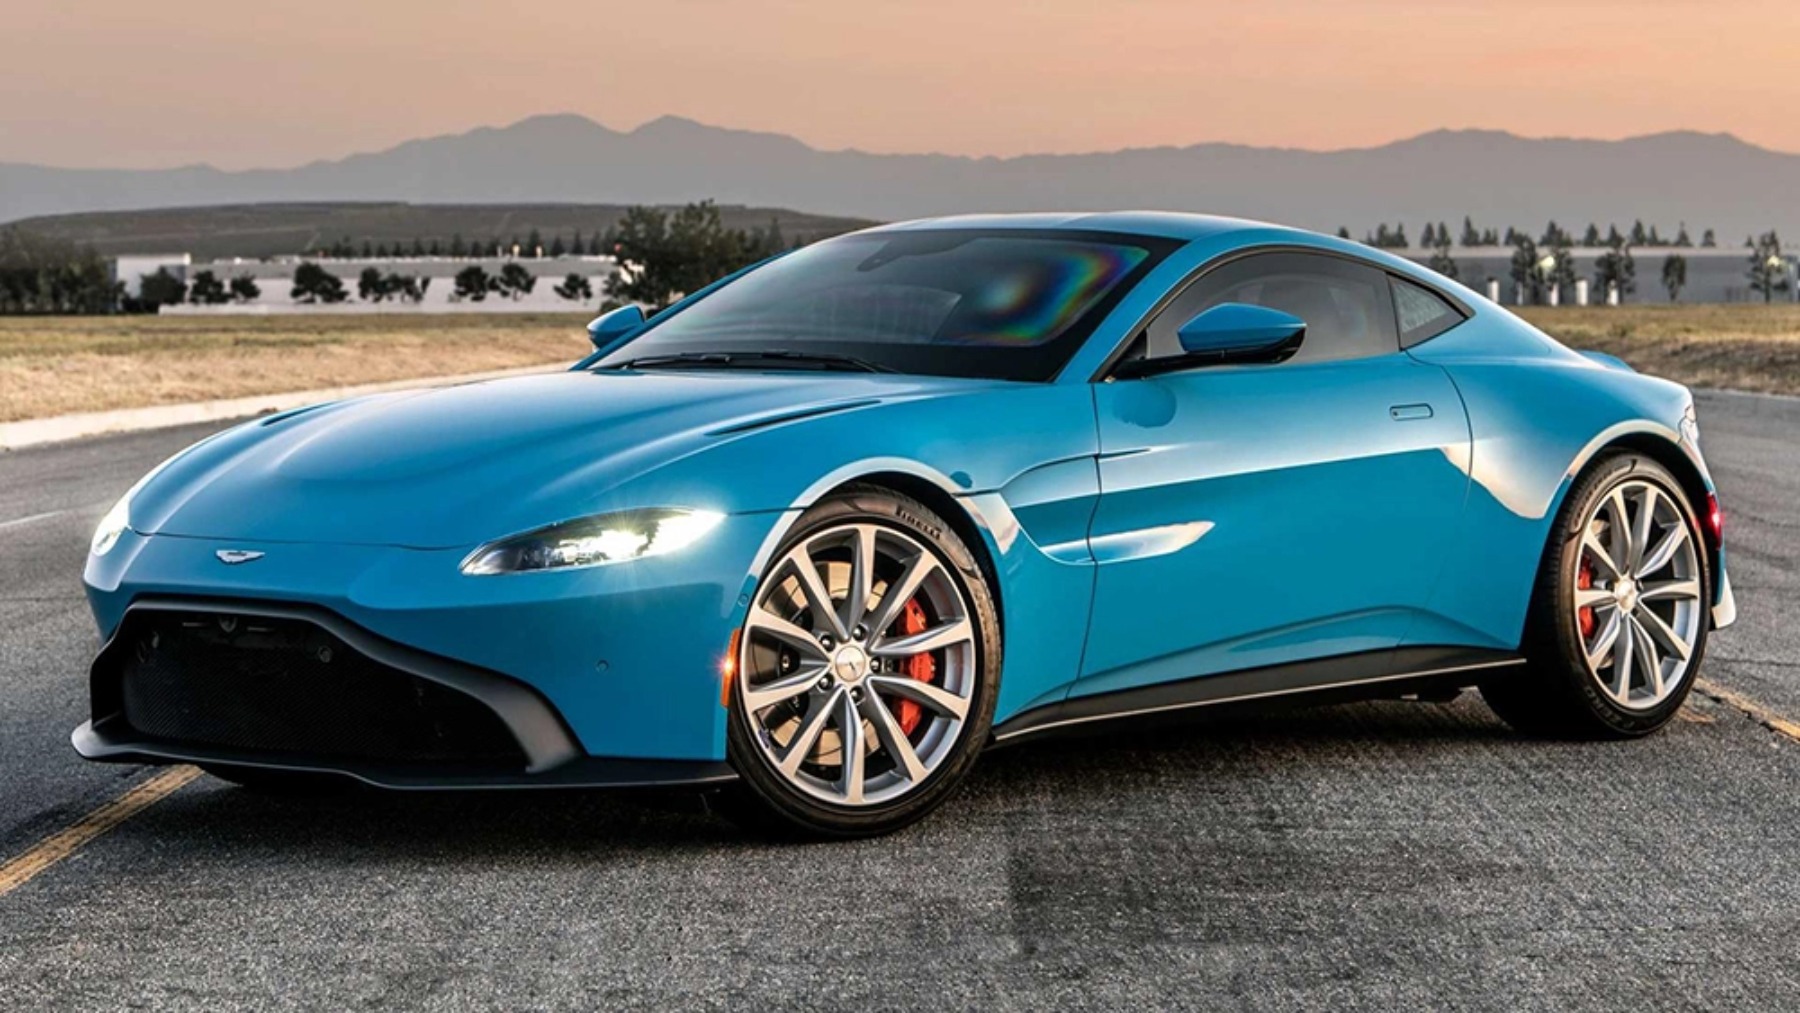 El nuevo Aston Martin a prueba de balas diseñado para espías en la vida real